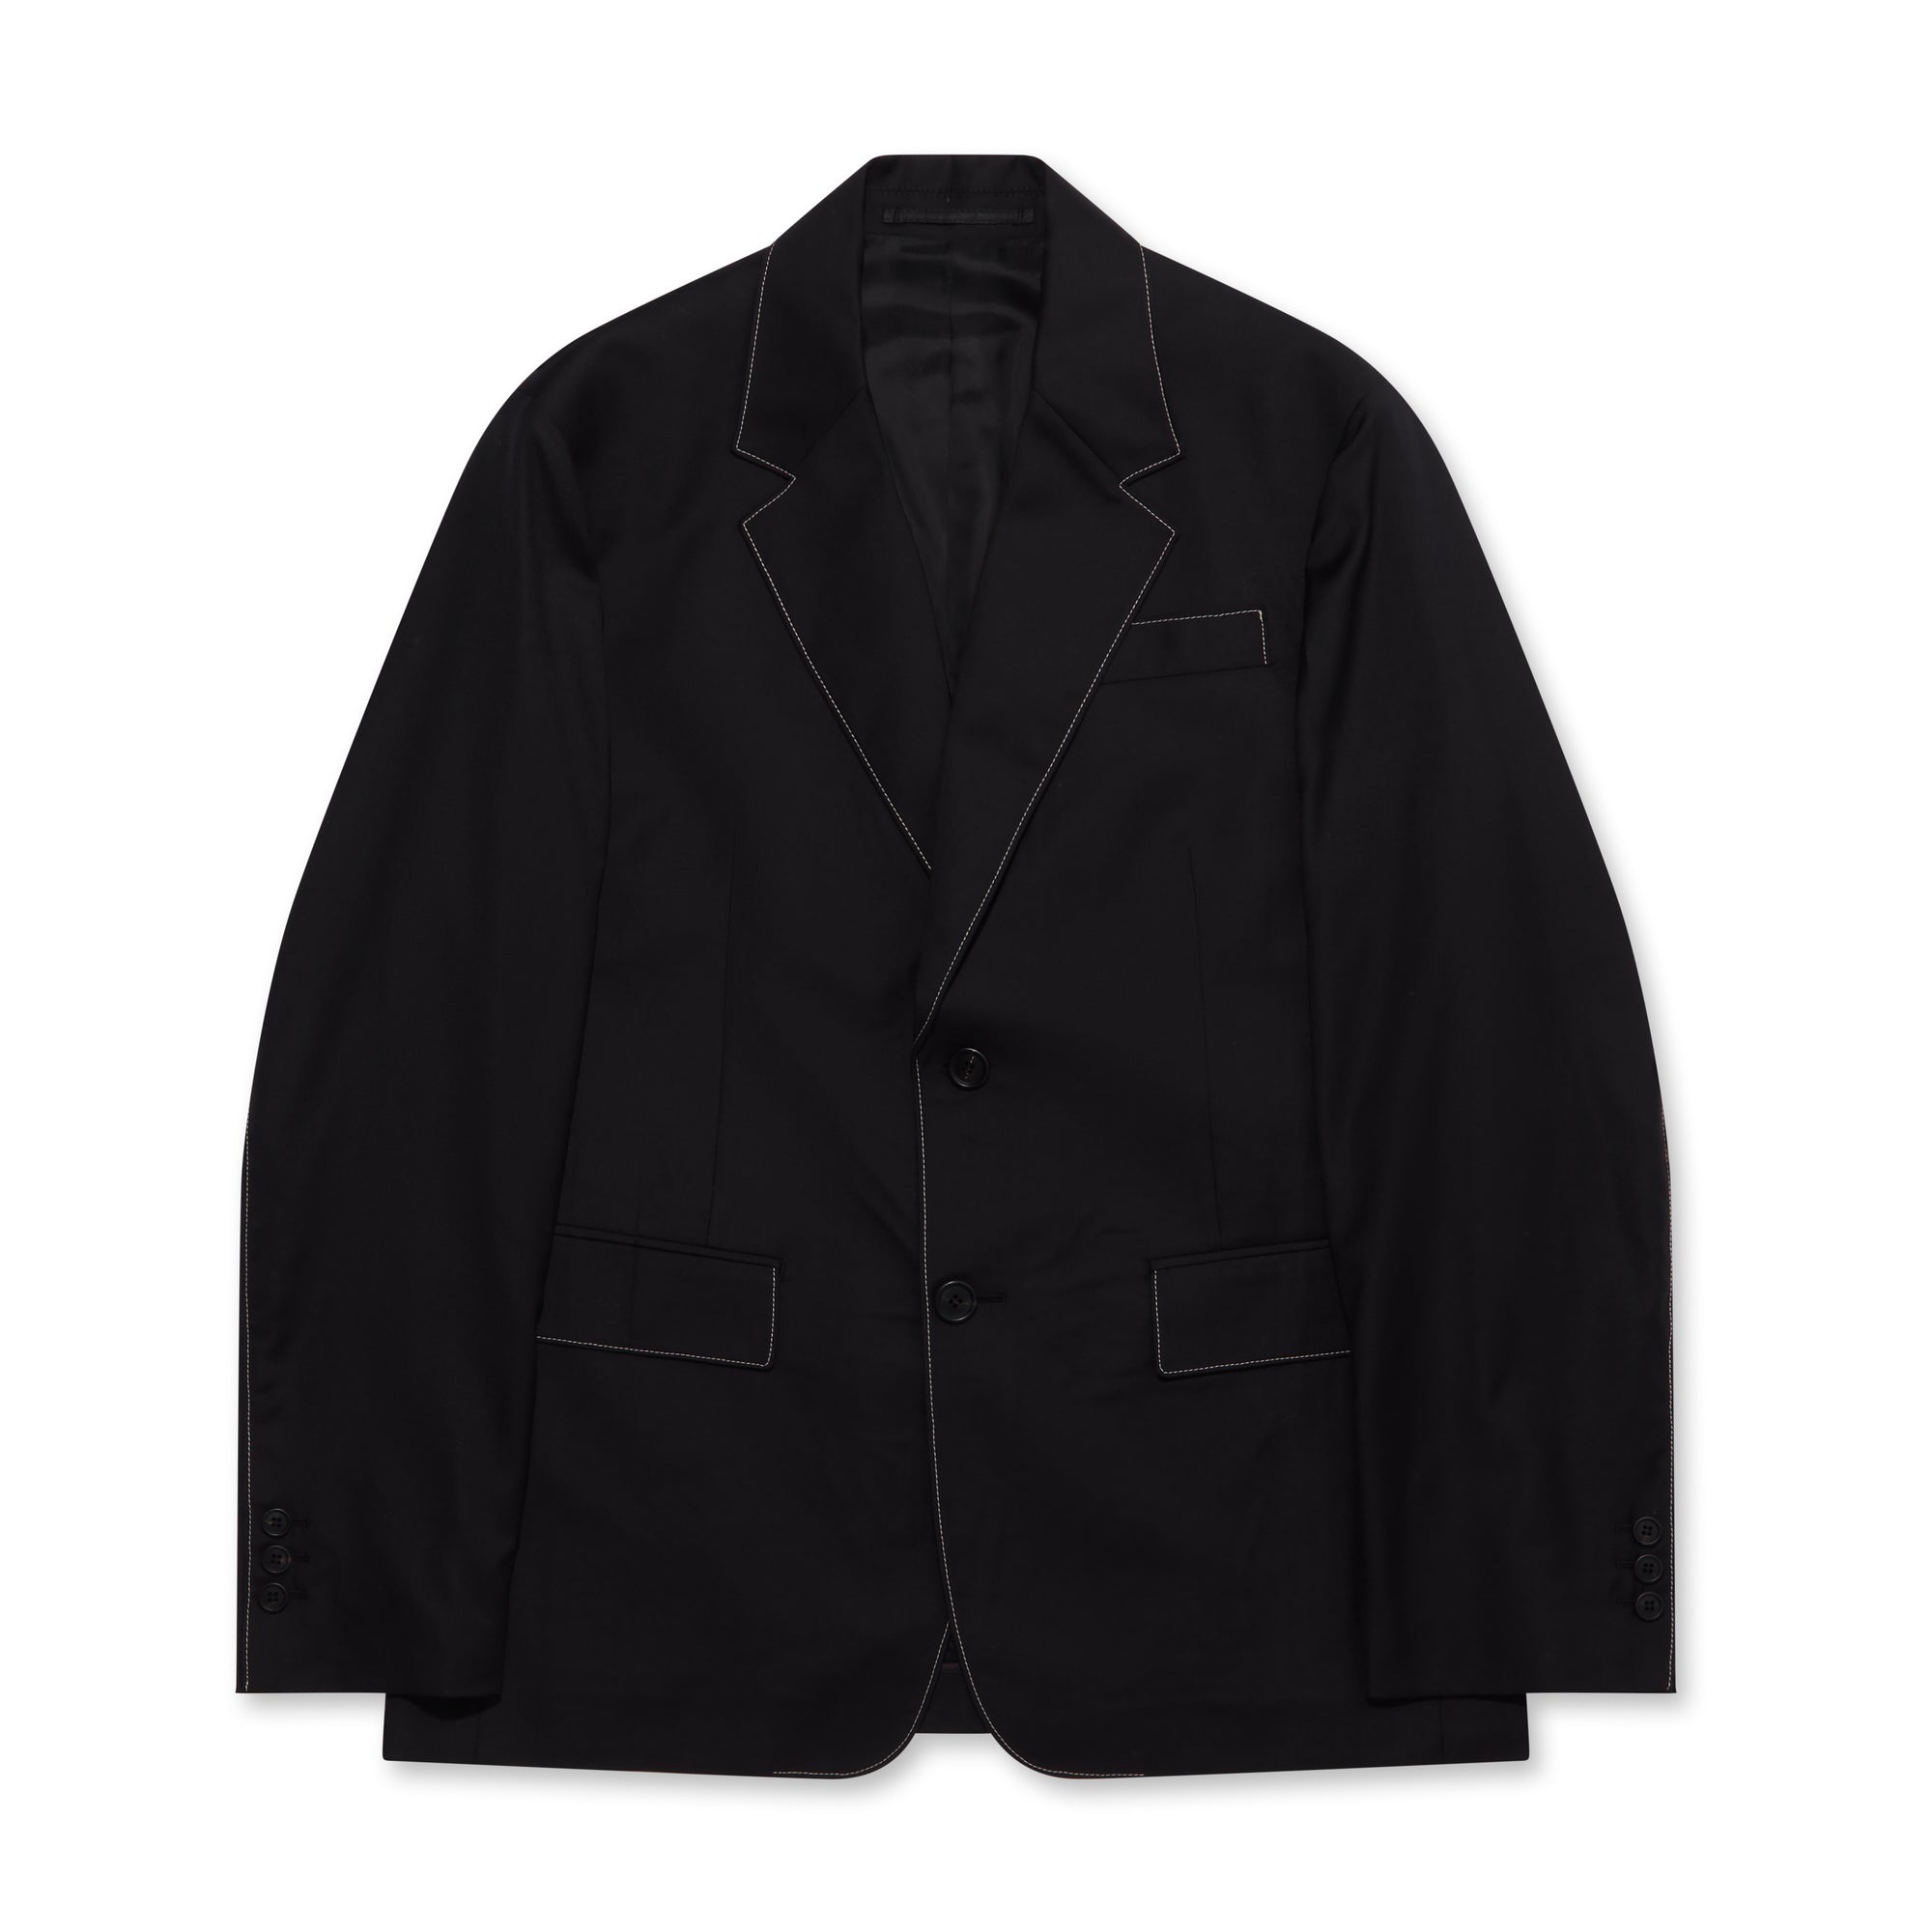 Prada - Men’s Single-Breasted Wool Jacket - (Black) view 5